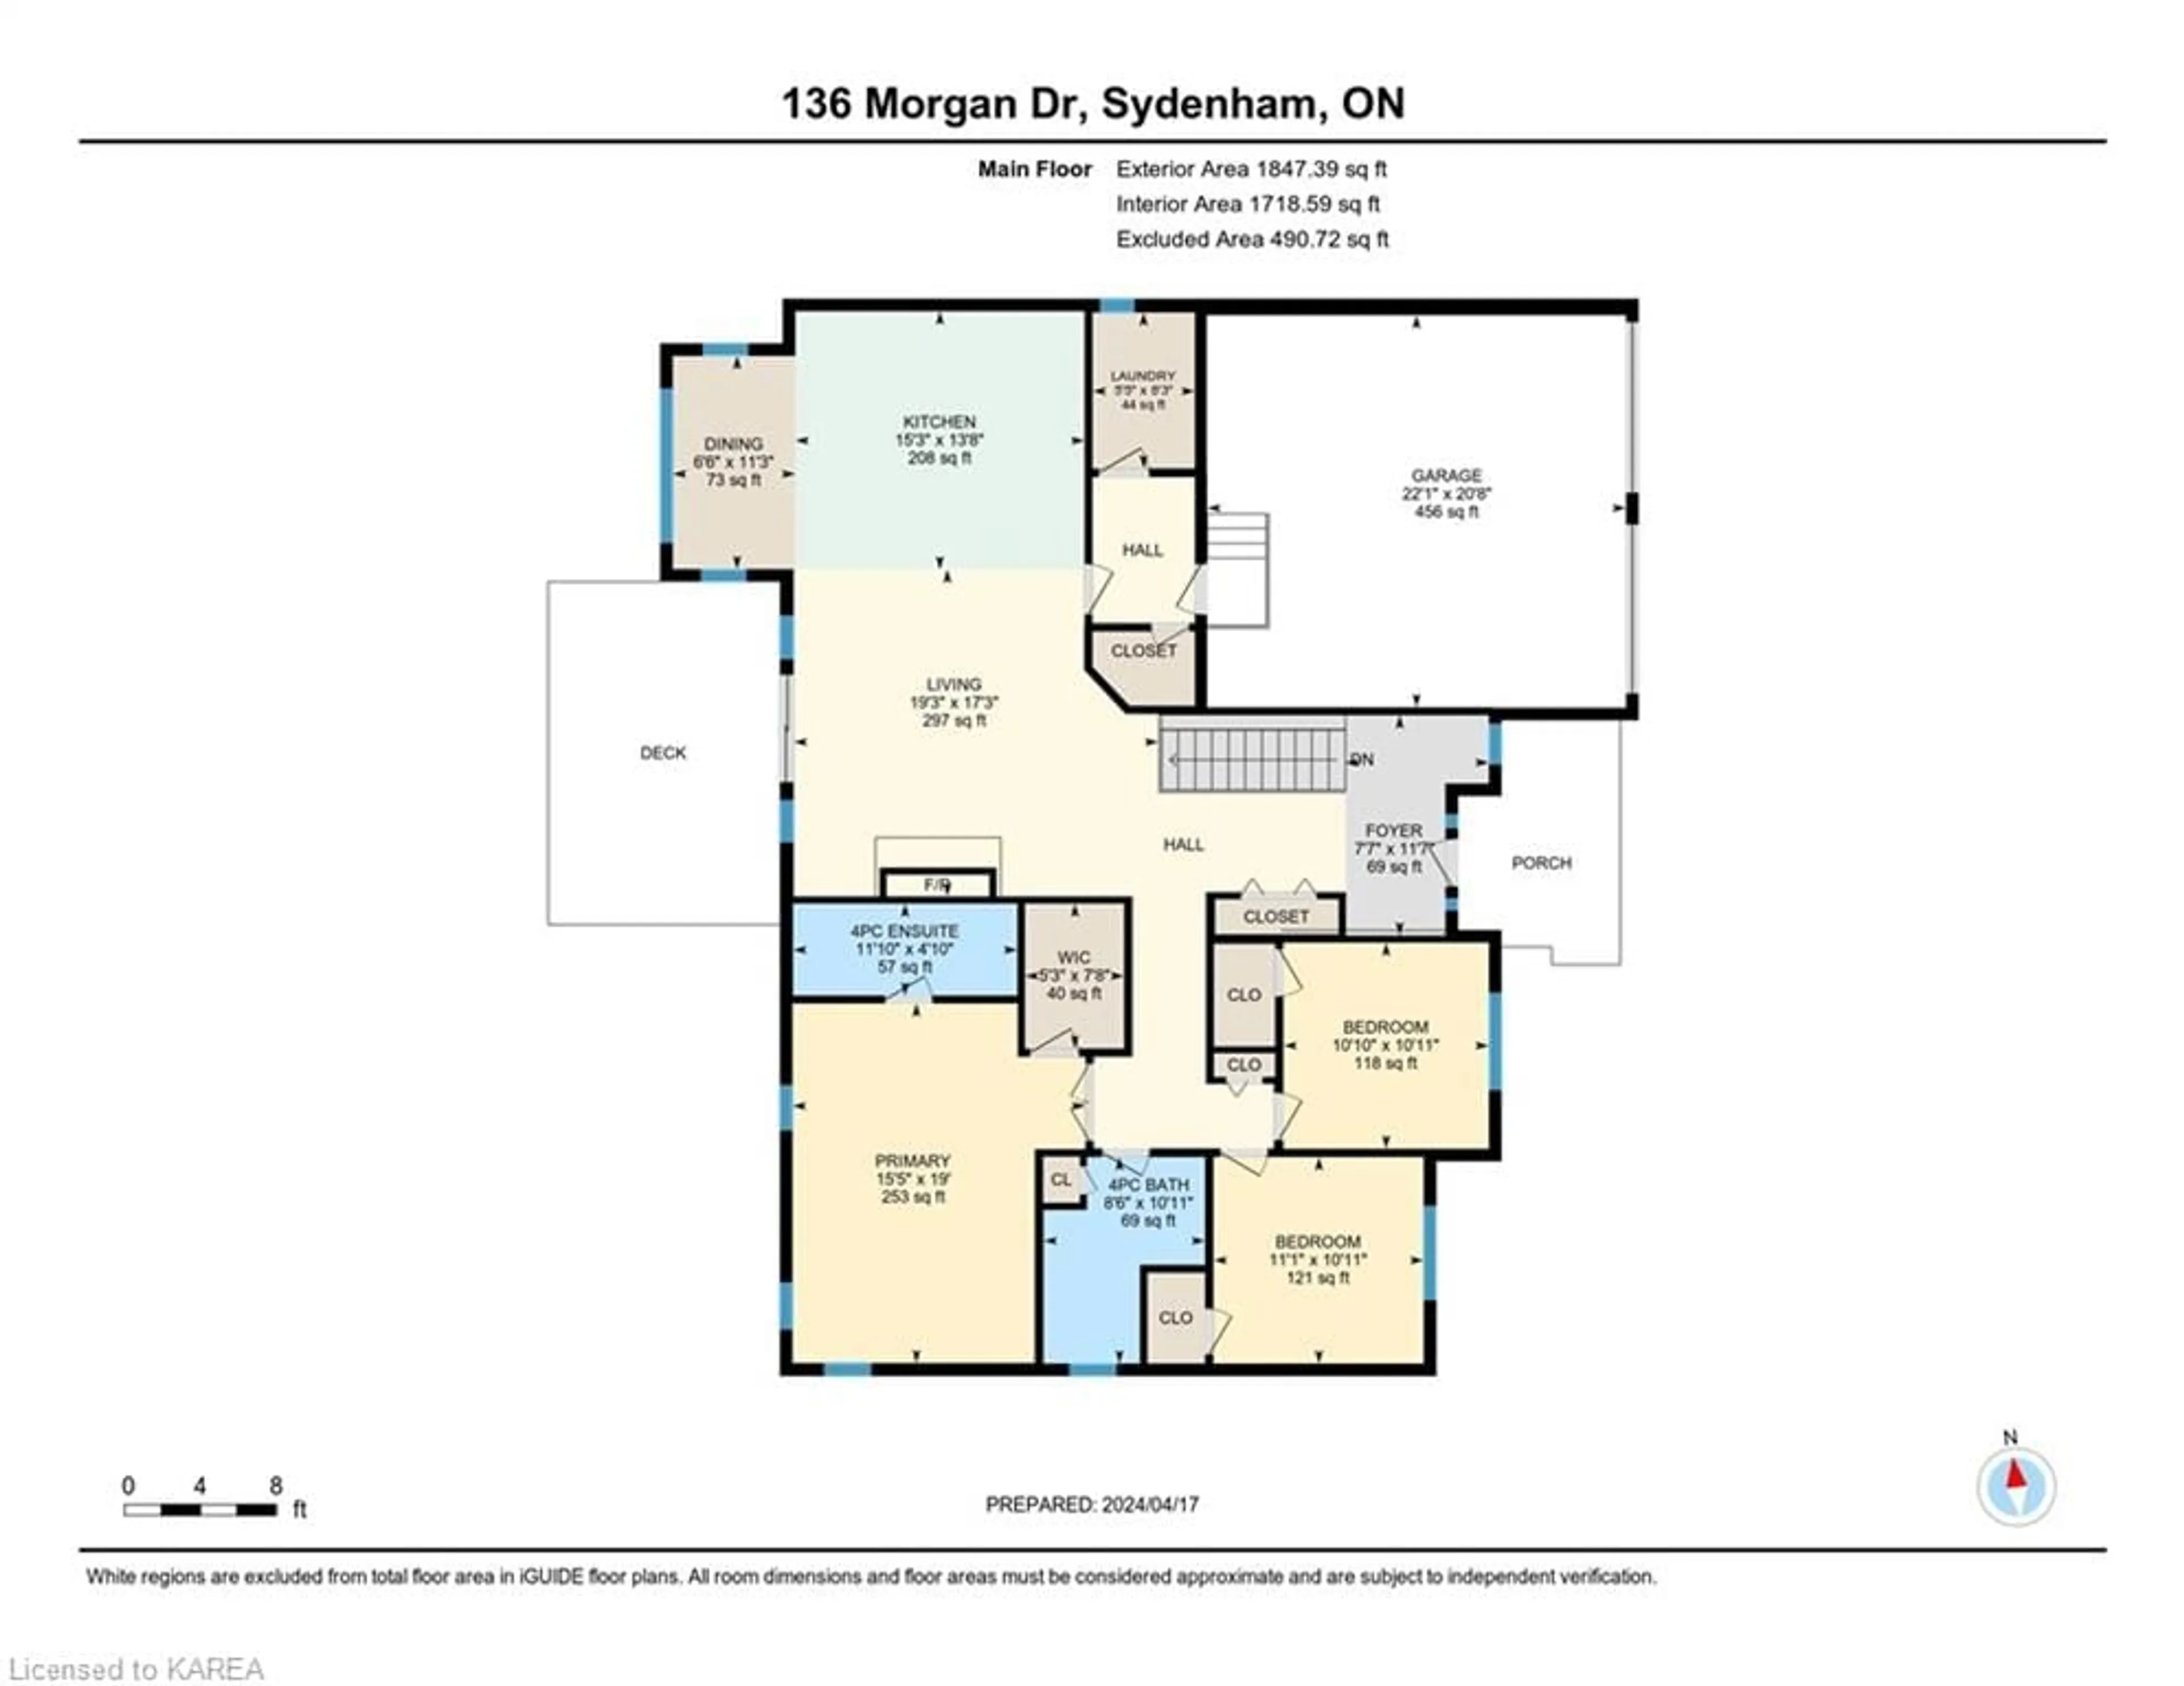 Floor plan for 136 Morgan Dr, Sydenham Ontario K0H 2T0